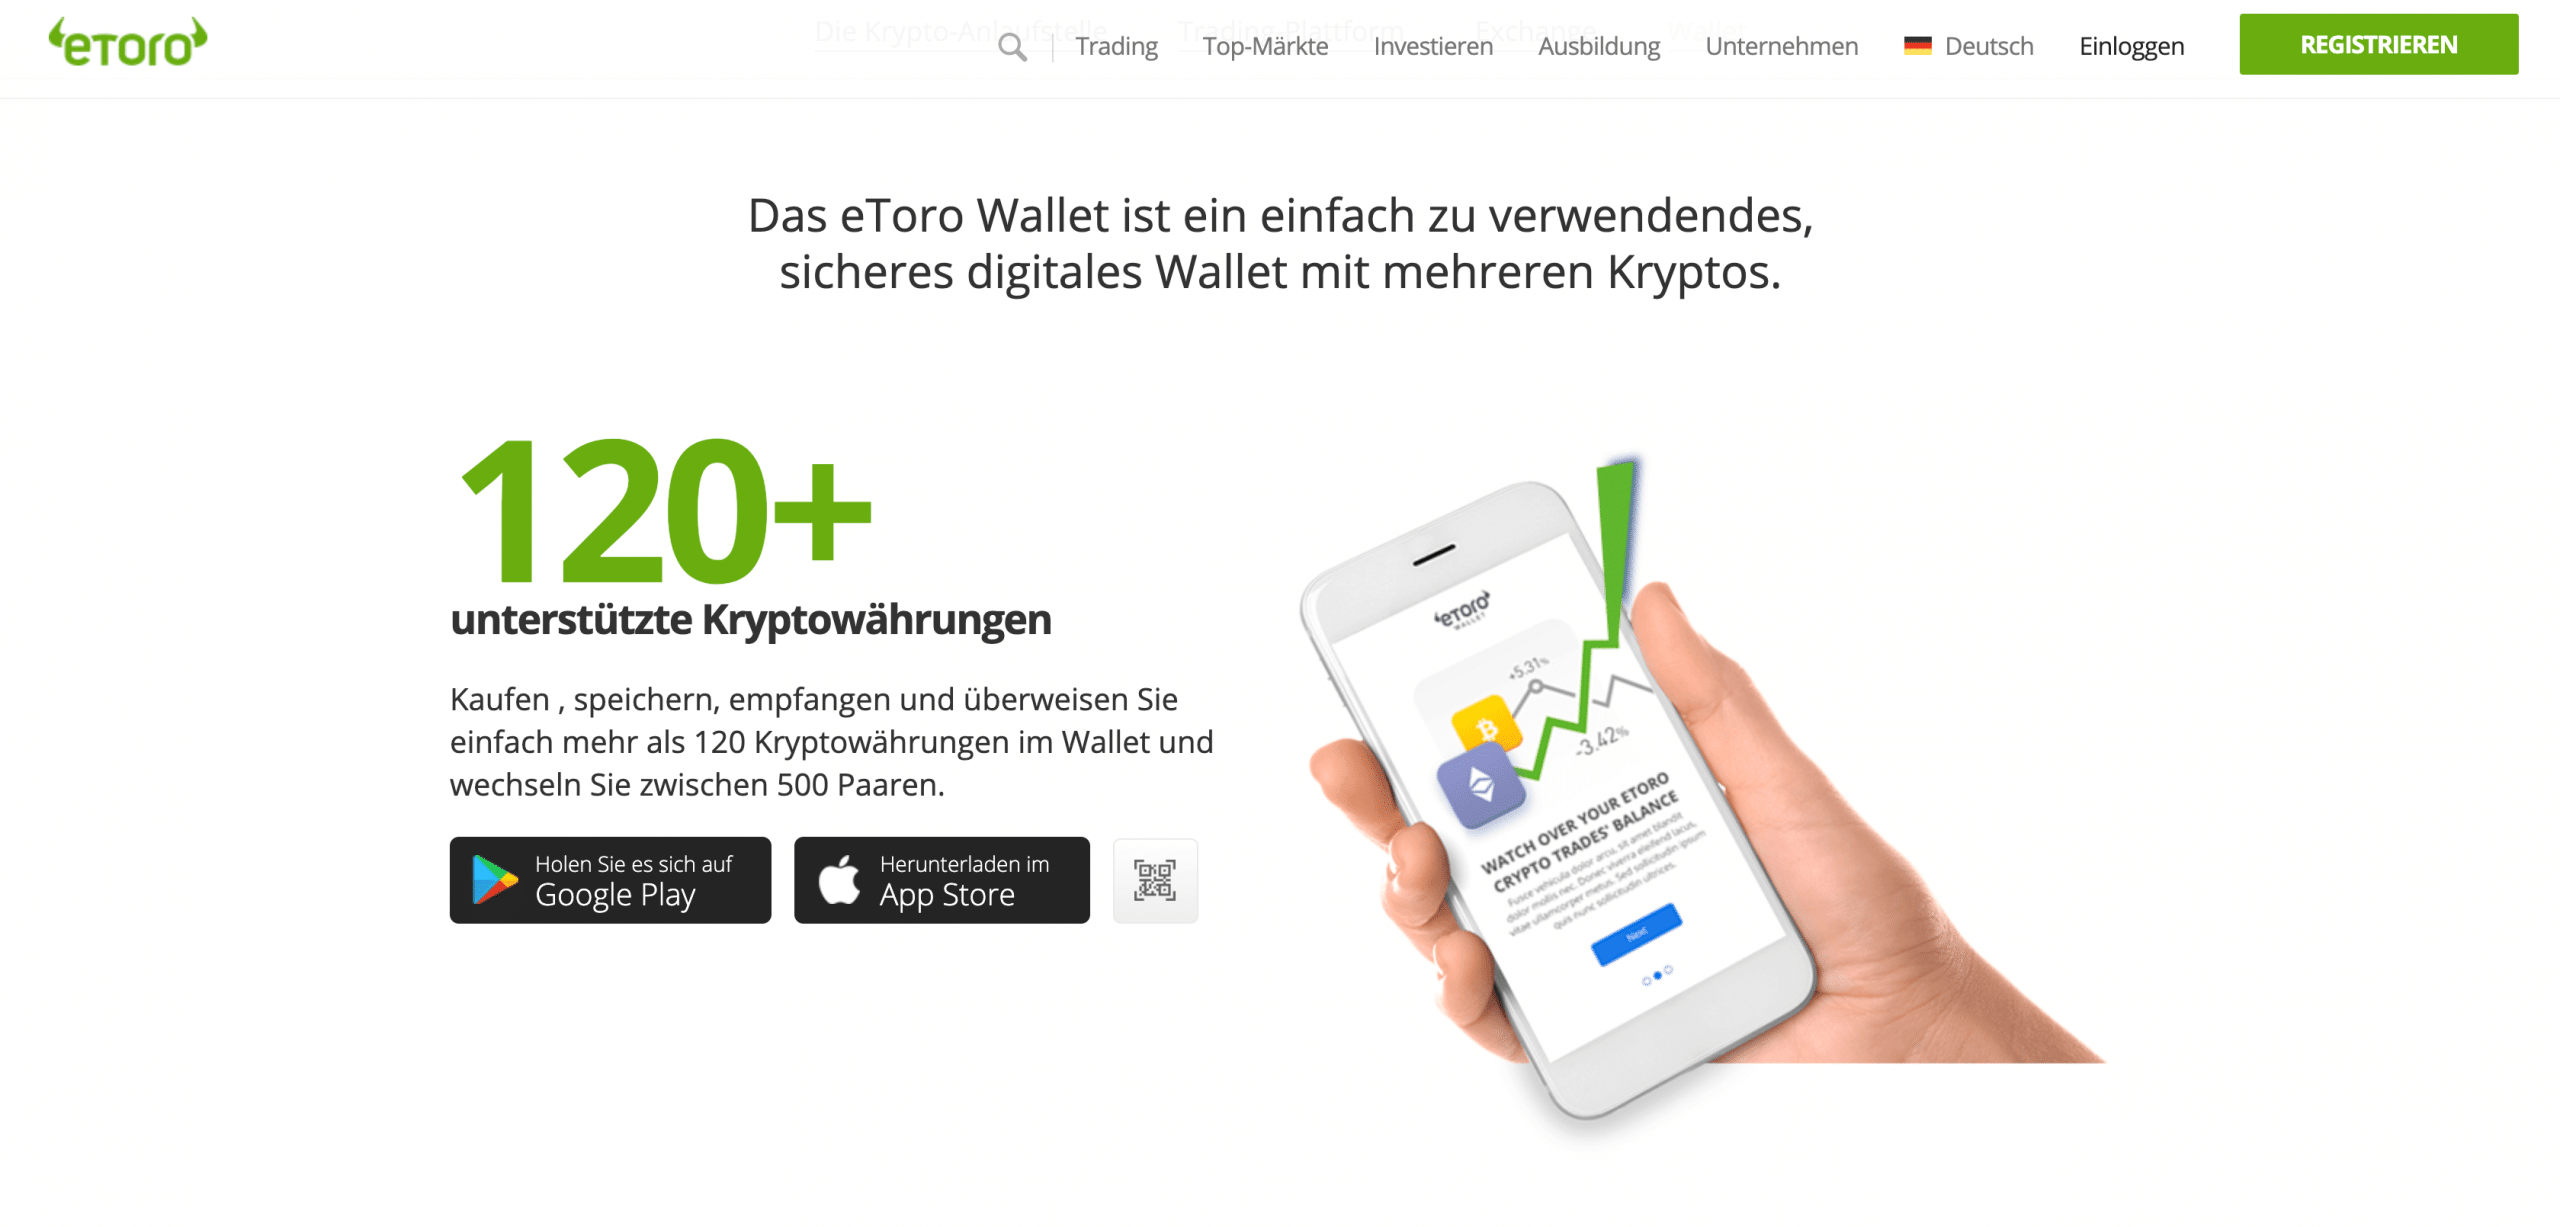 Kryptowährung kaufen in Deutschland: Top-Coins, Apps & mehr - COMPUTER BILD